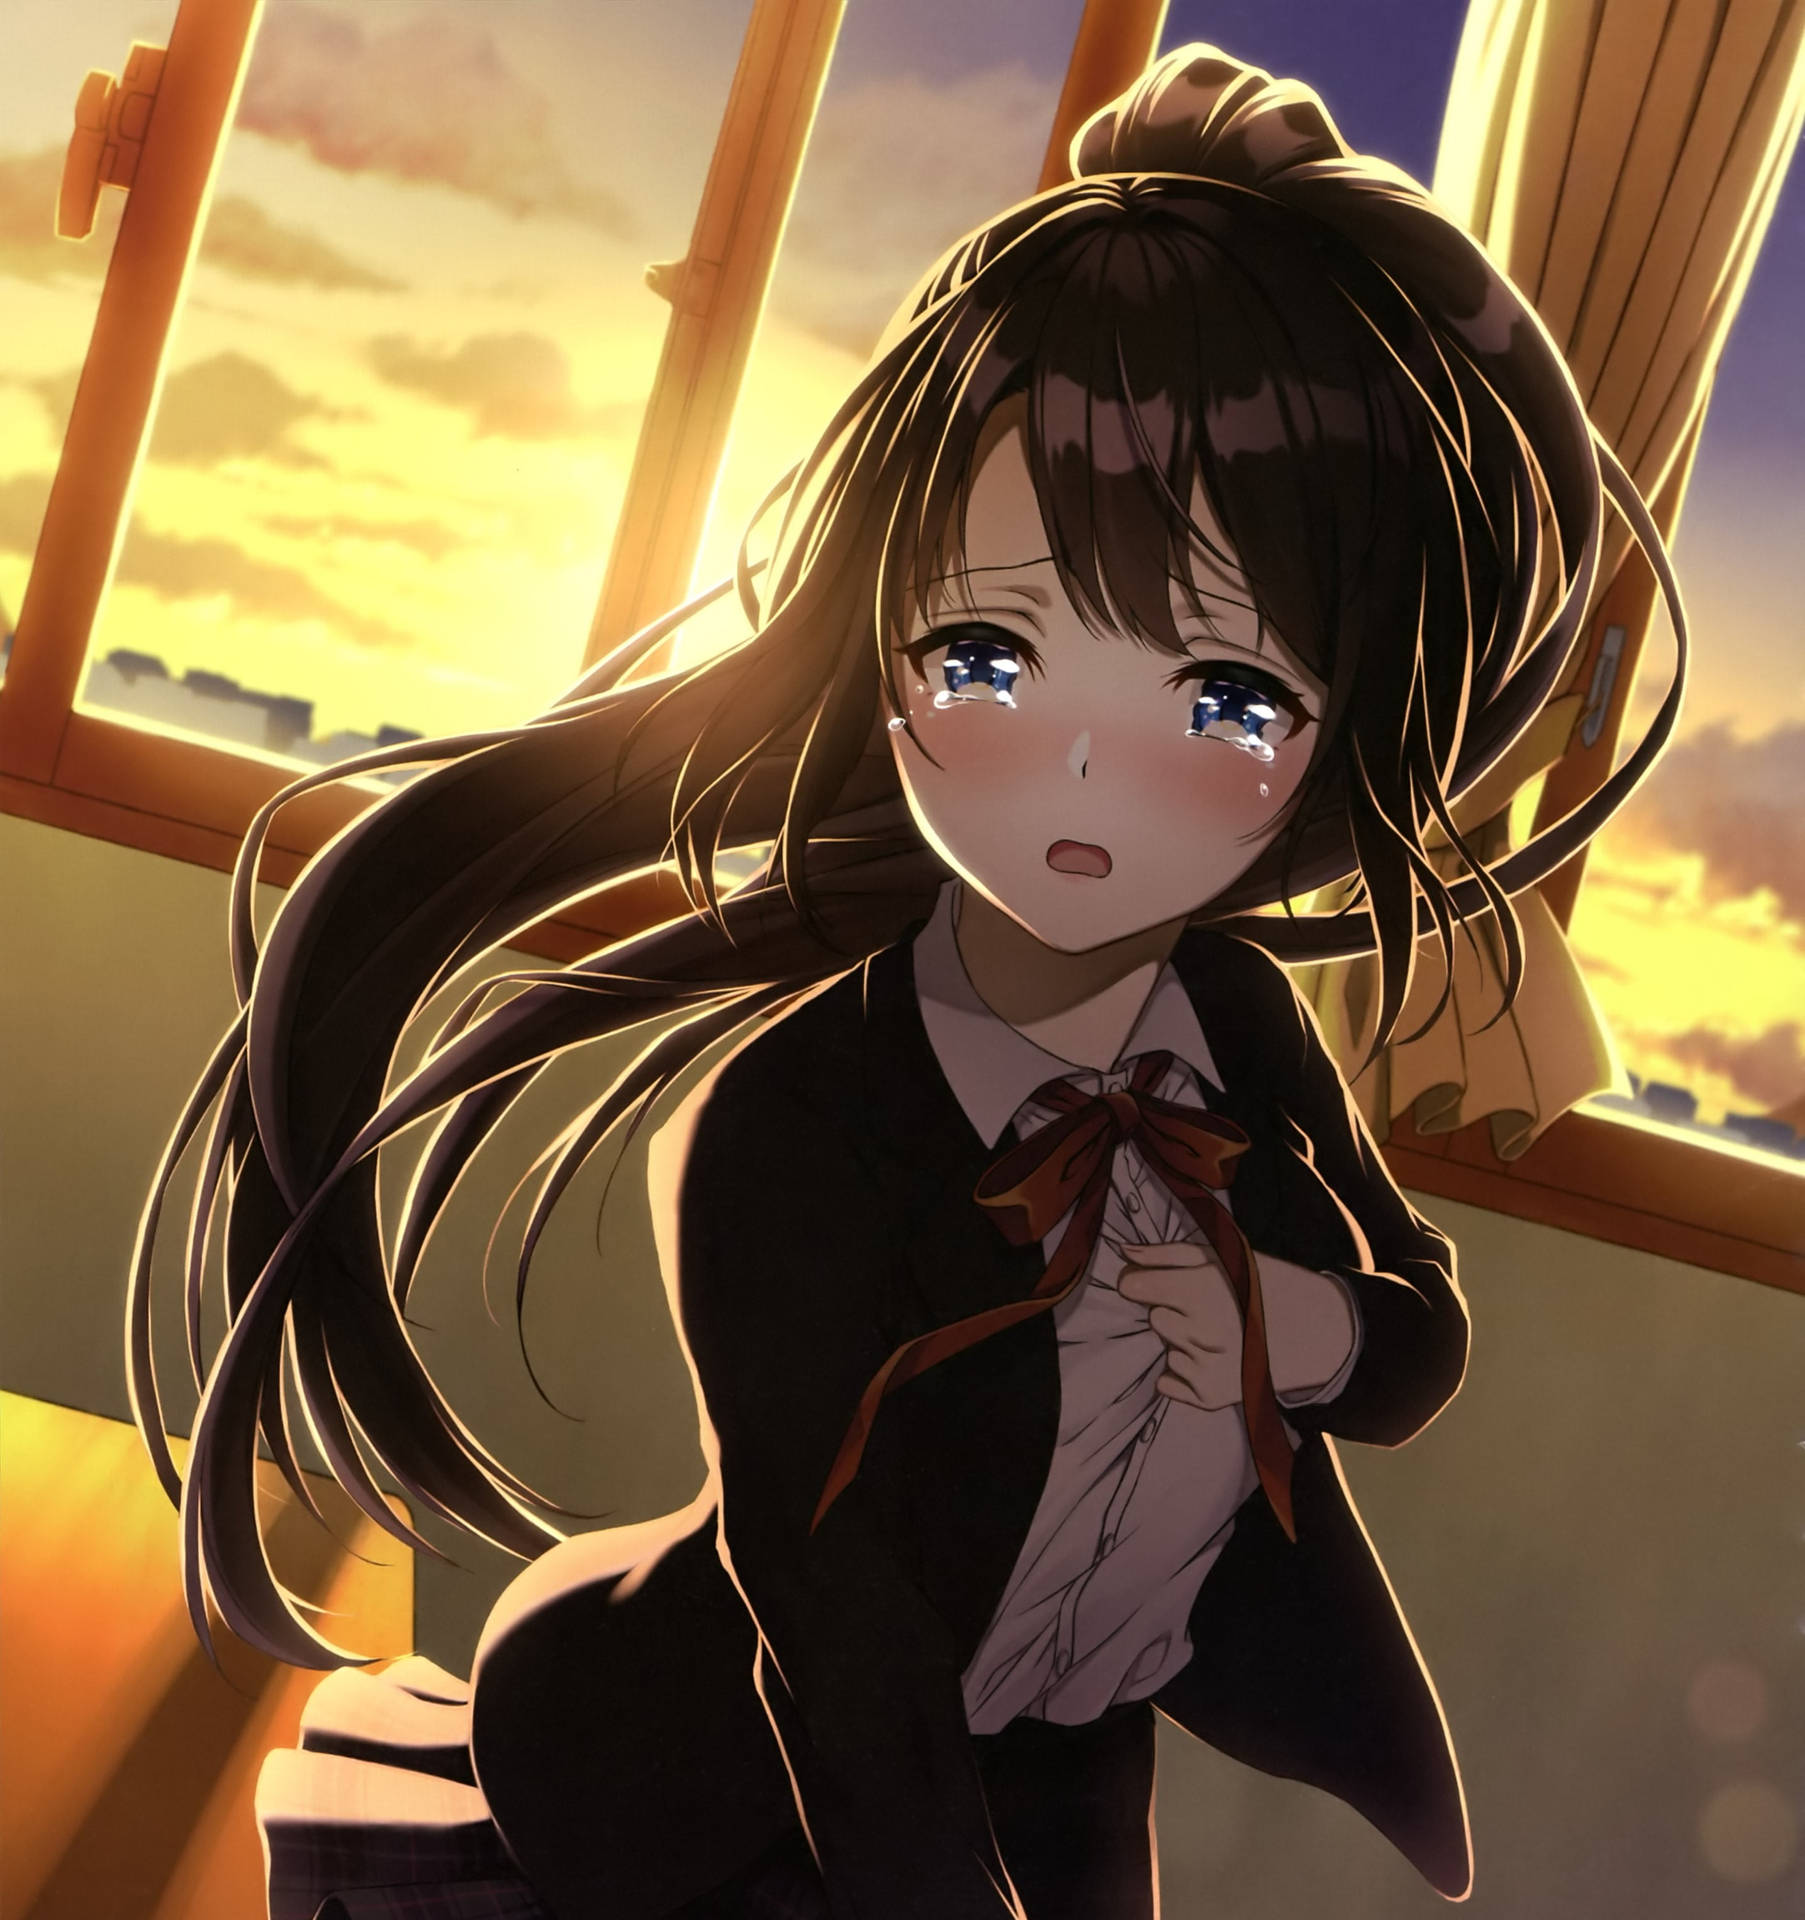 Sad Aesthetic Anime Girl Sunset Tears Wallpaper